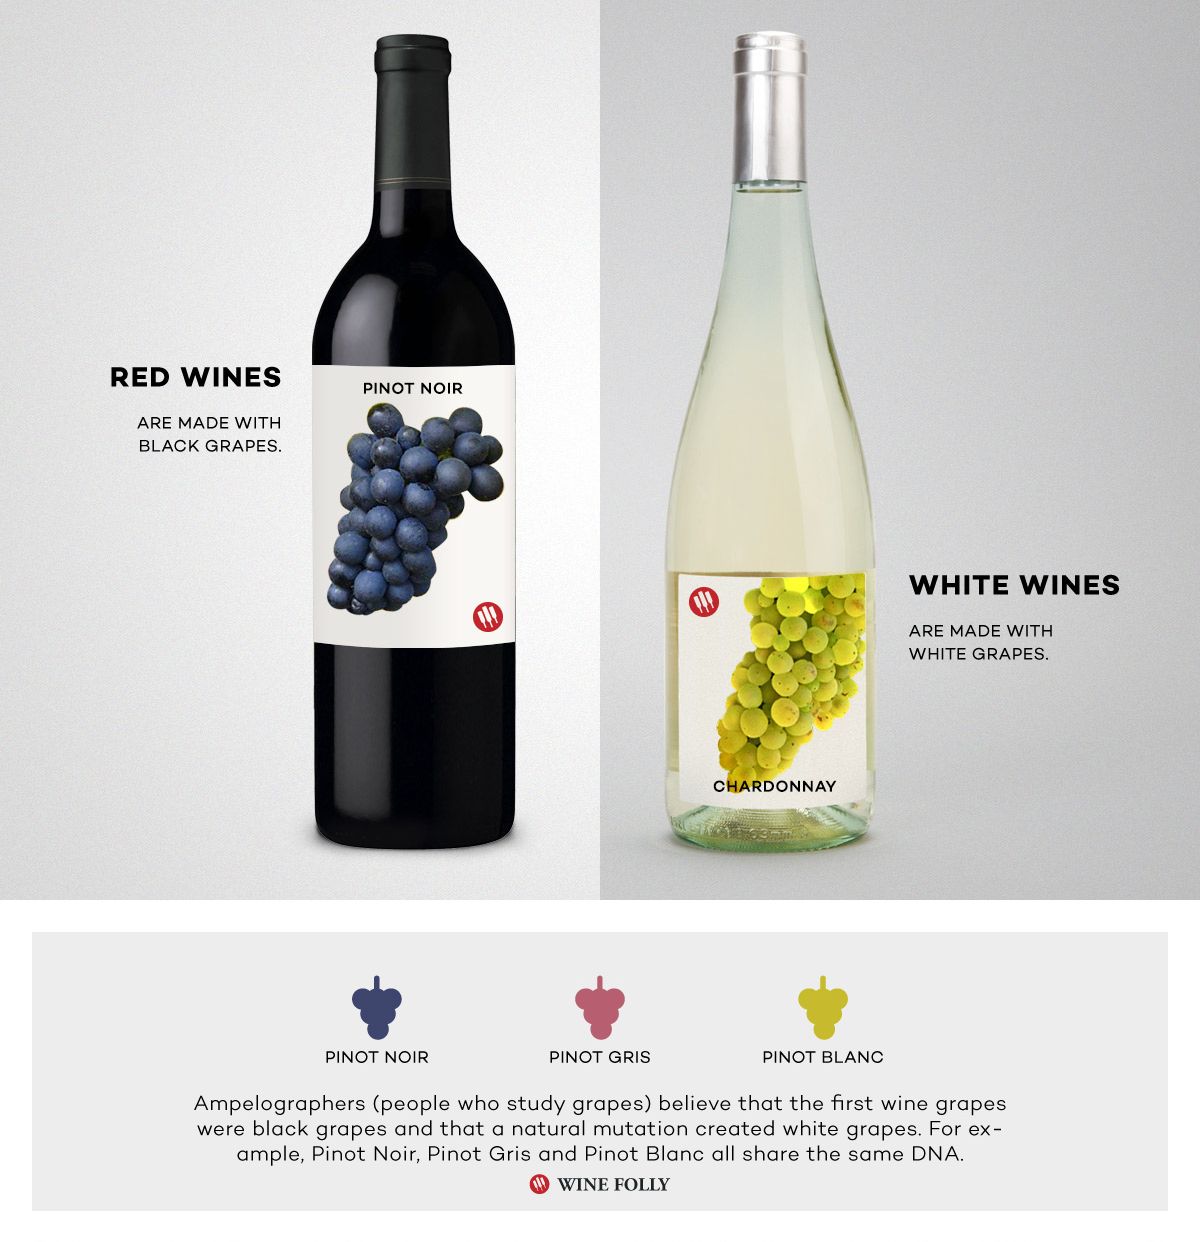 יין אדום לעומת יין לבן השוואה בין פינו נואר ושרדונה מאת איוולת